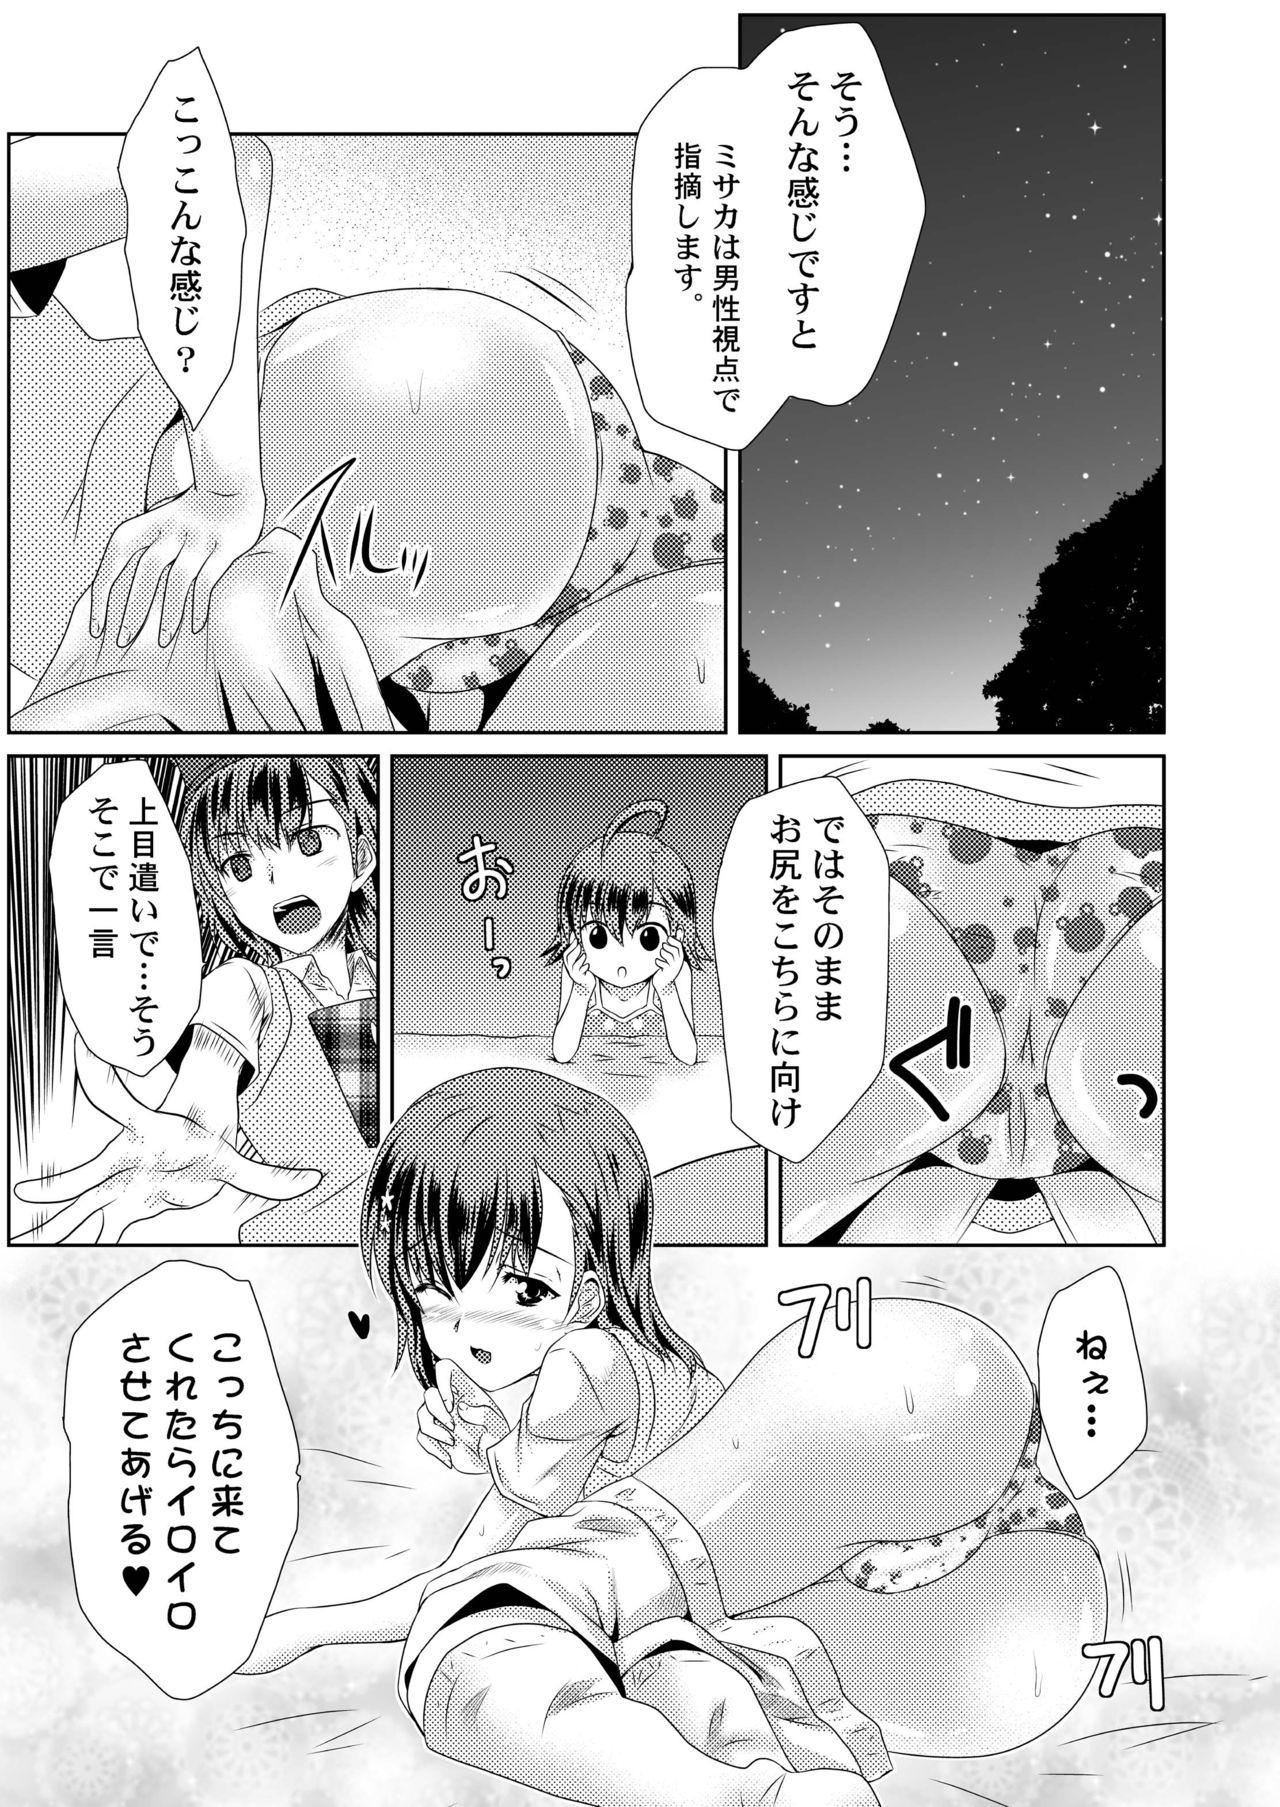 Bubblebutt MISAKA x 3 Sunaona Kimitachi e. - Toaru majutsu no index Girl Girl - Page 10